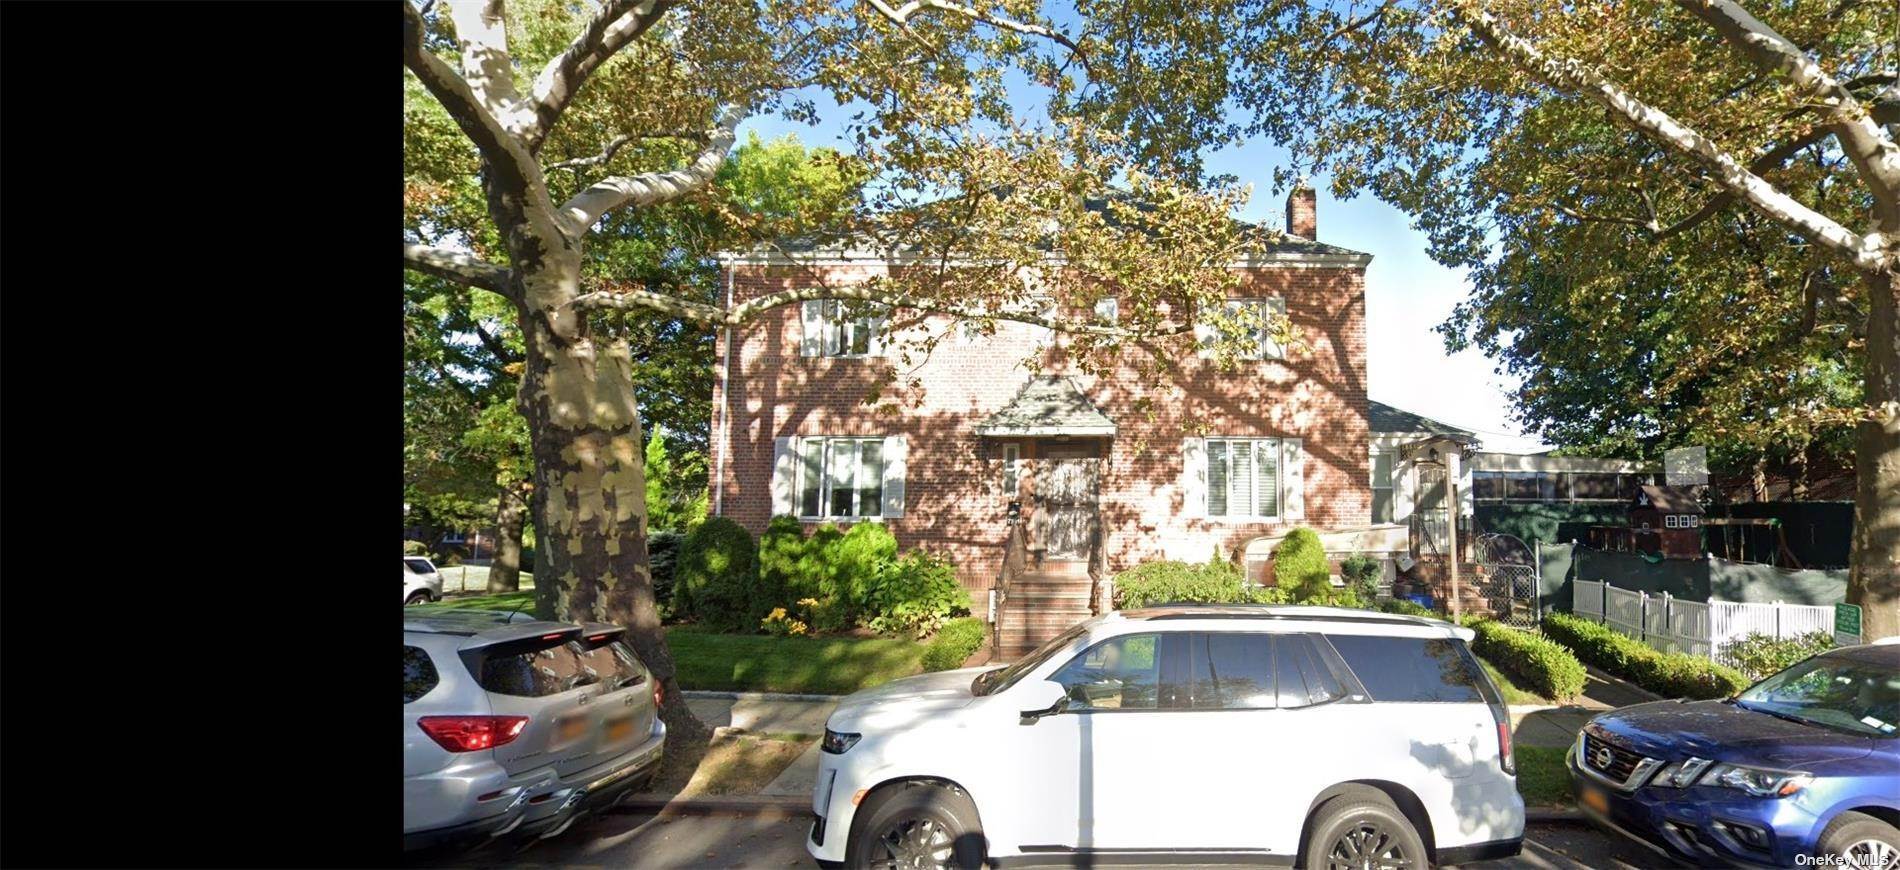 Жилой аренды в 71-05 Main Street Kew Gardens Hills, Нью-Йорк 11367 Соединенные Штаты